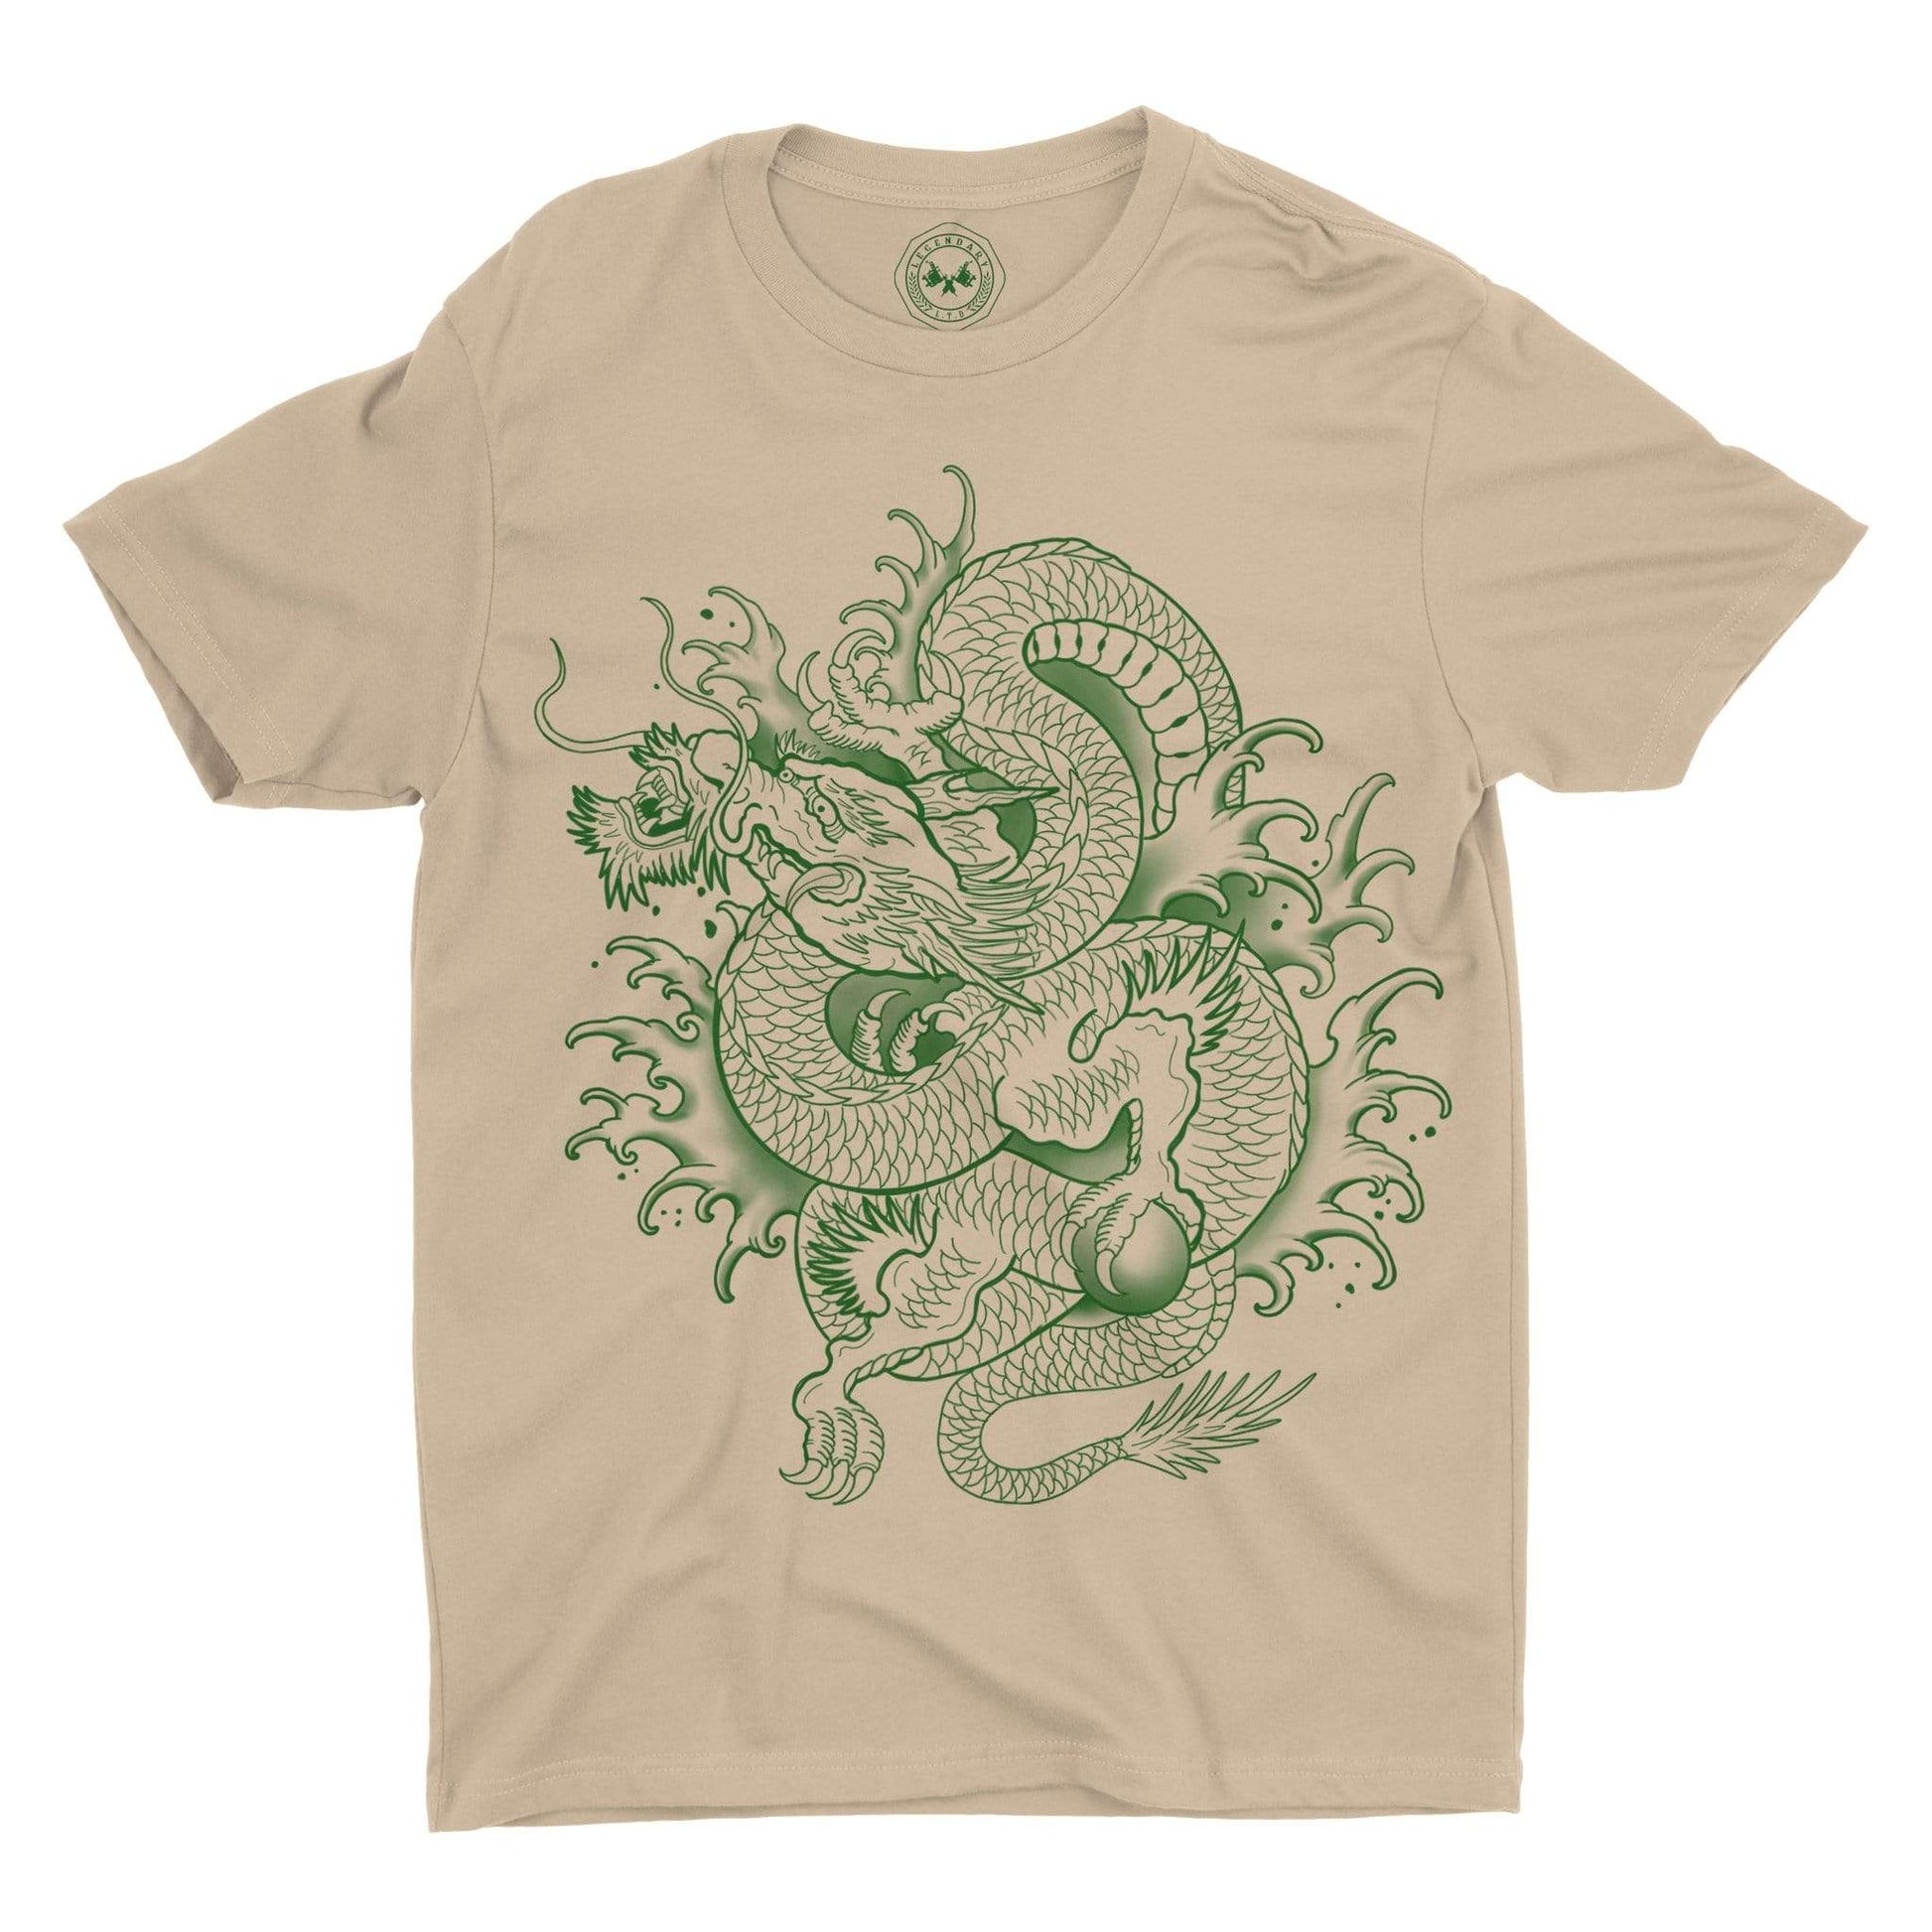 Dragon Graphic Tee on Tan colored shirt